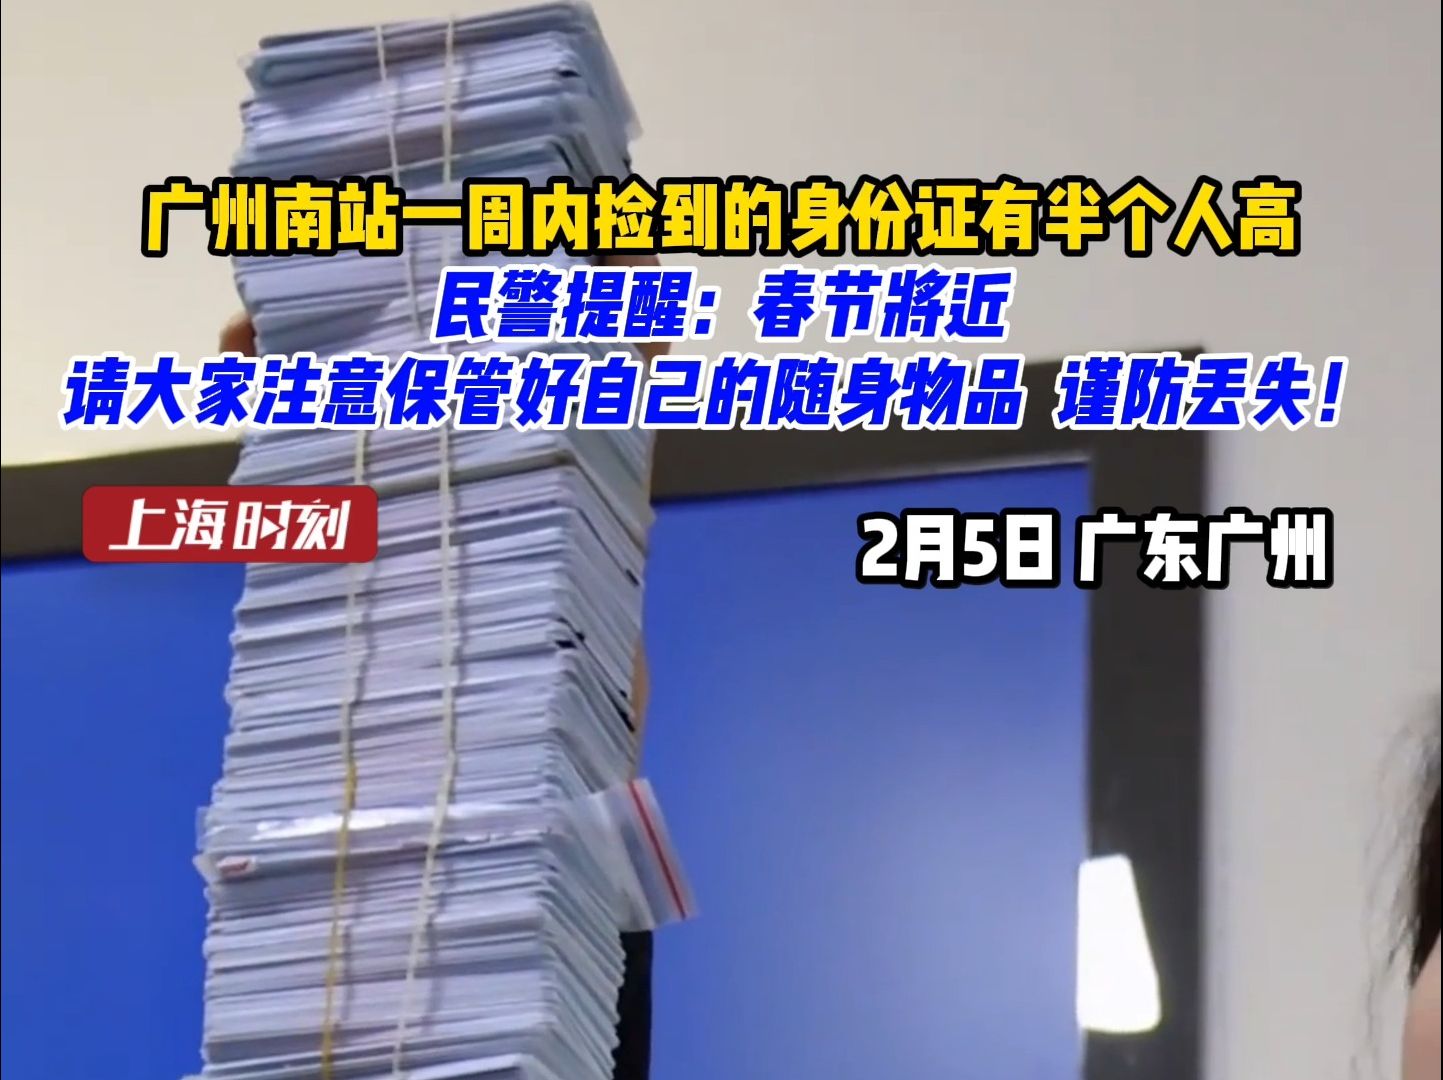 广州南站一周内捡到的身份证有半个人高！民警提醒：春节将近，请大家注意保管好自己的随身物品，谨防丢失！